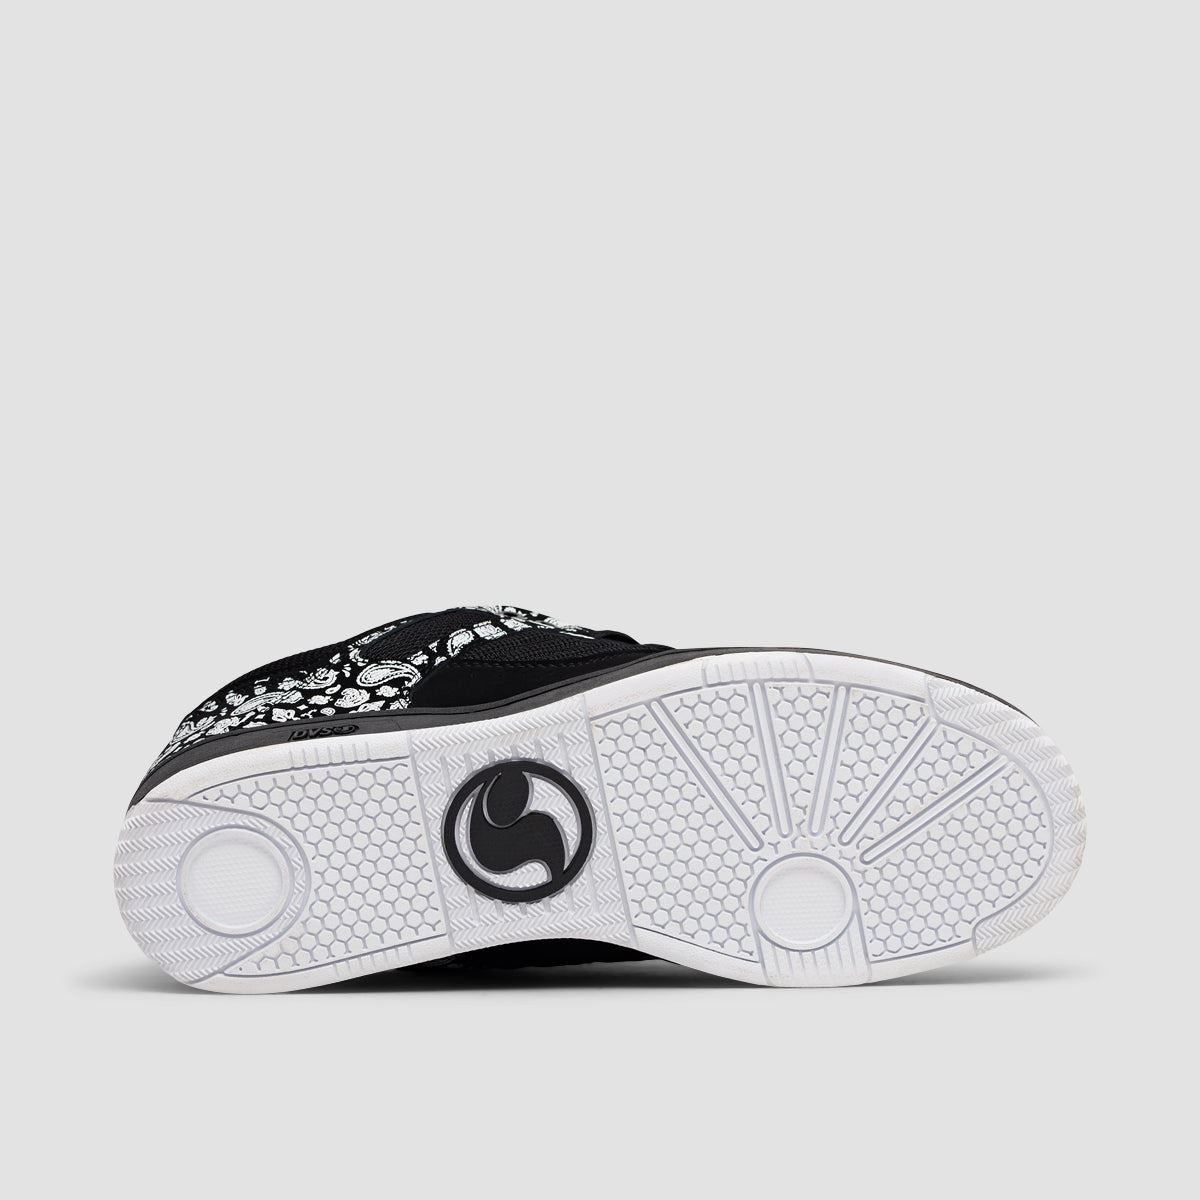 DVS Enduro 125 Shoes - Black/White/Print Nubuck